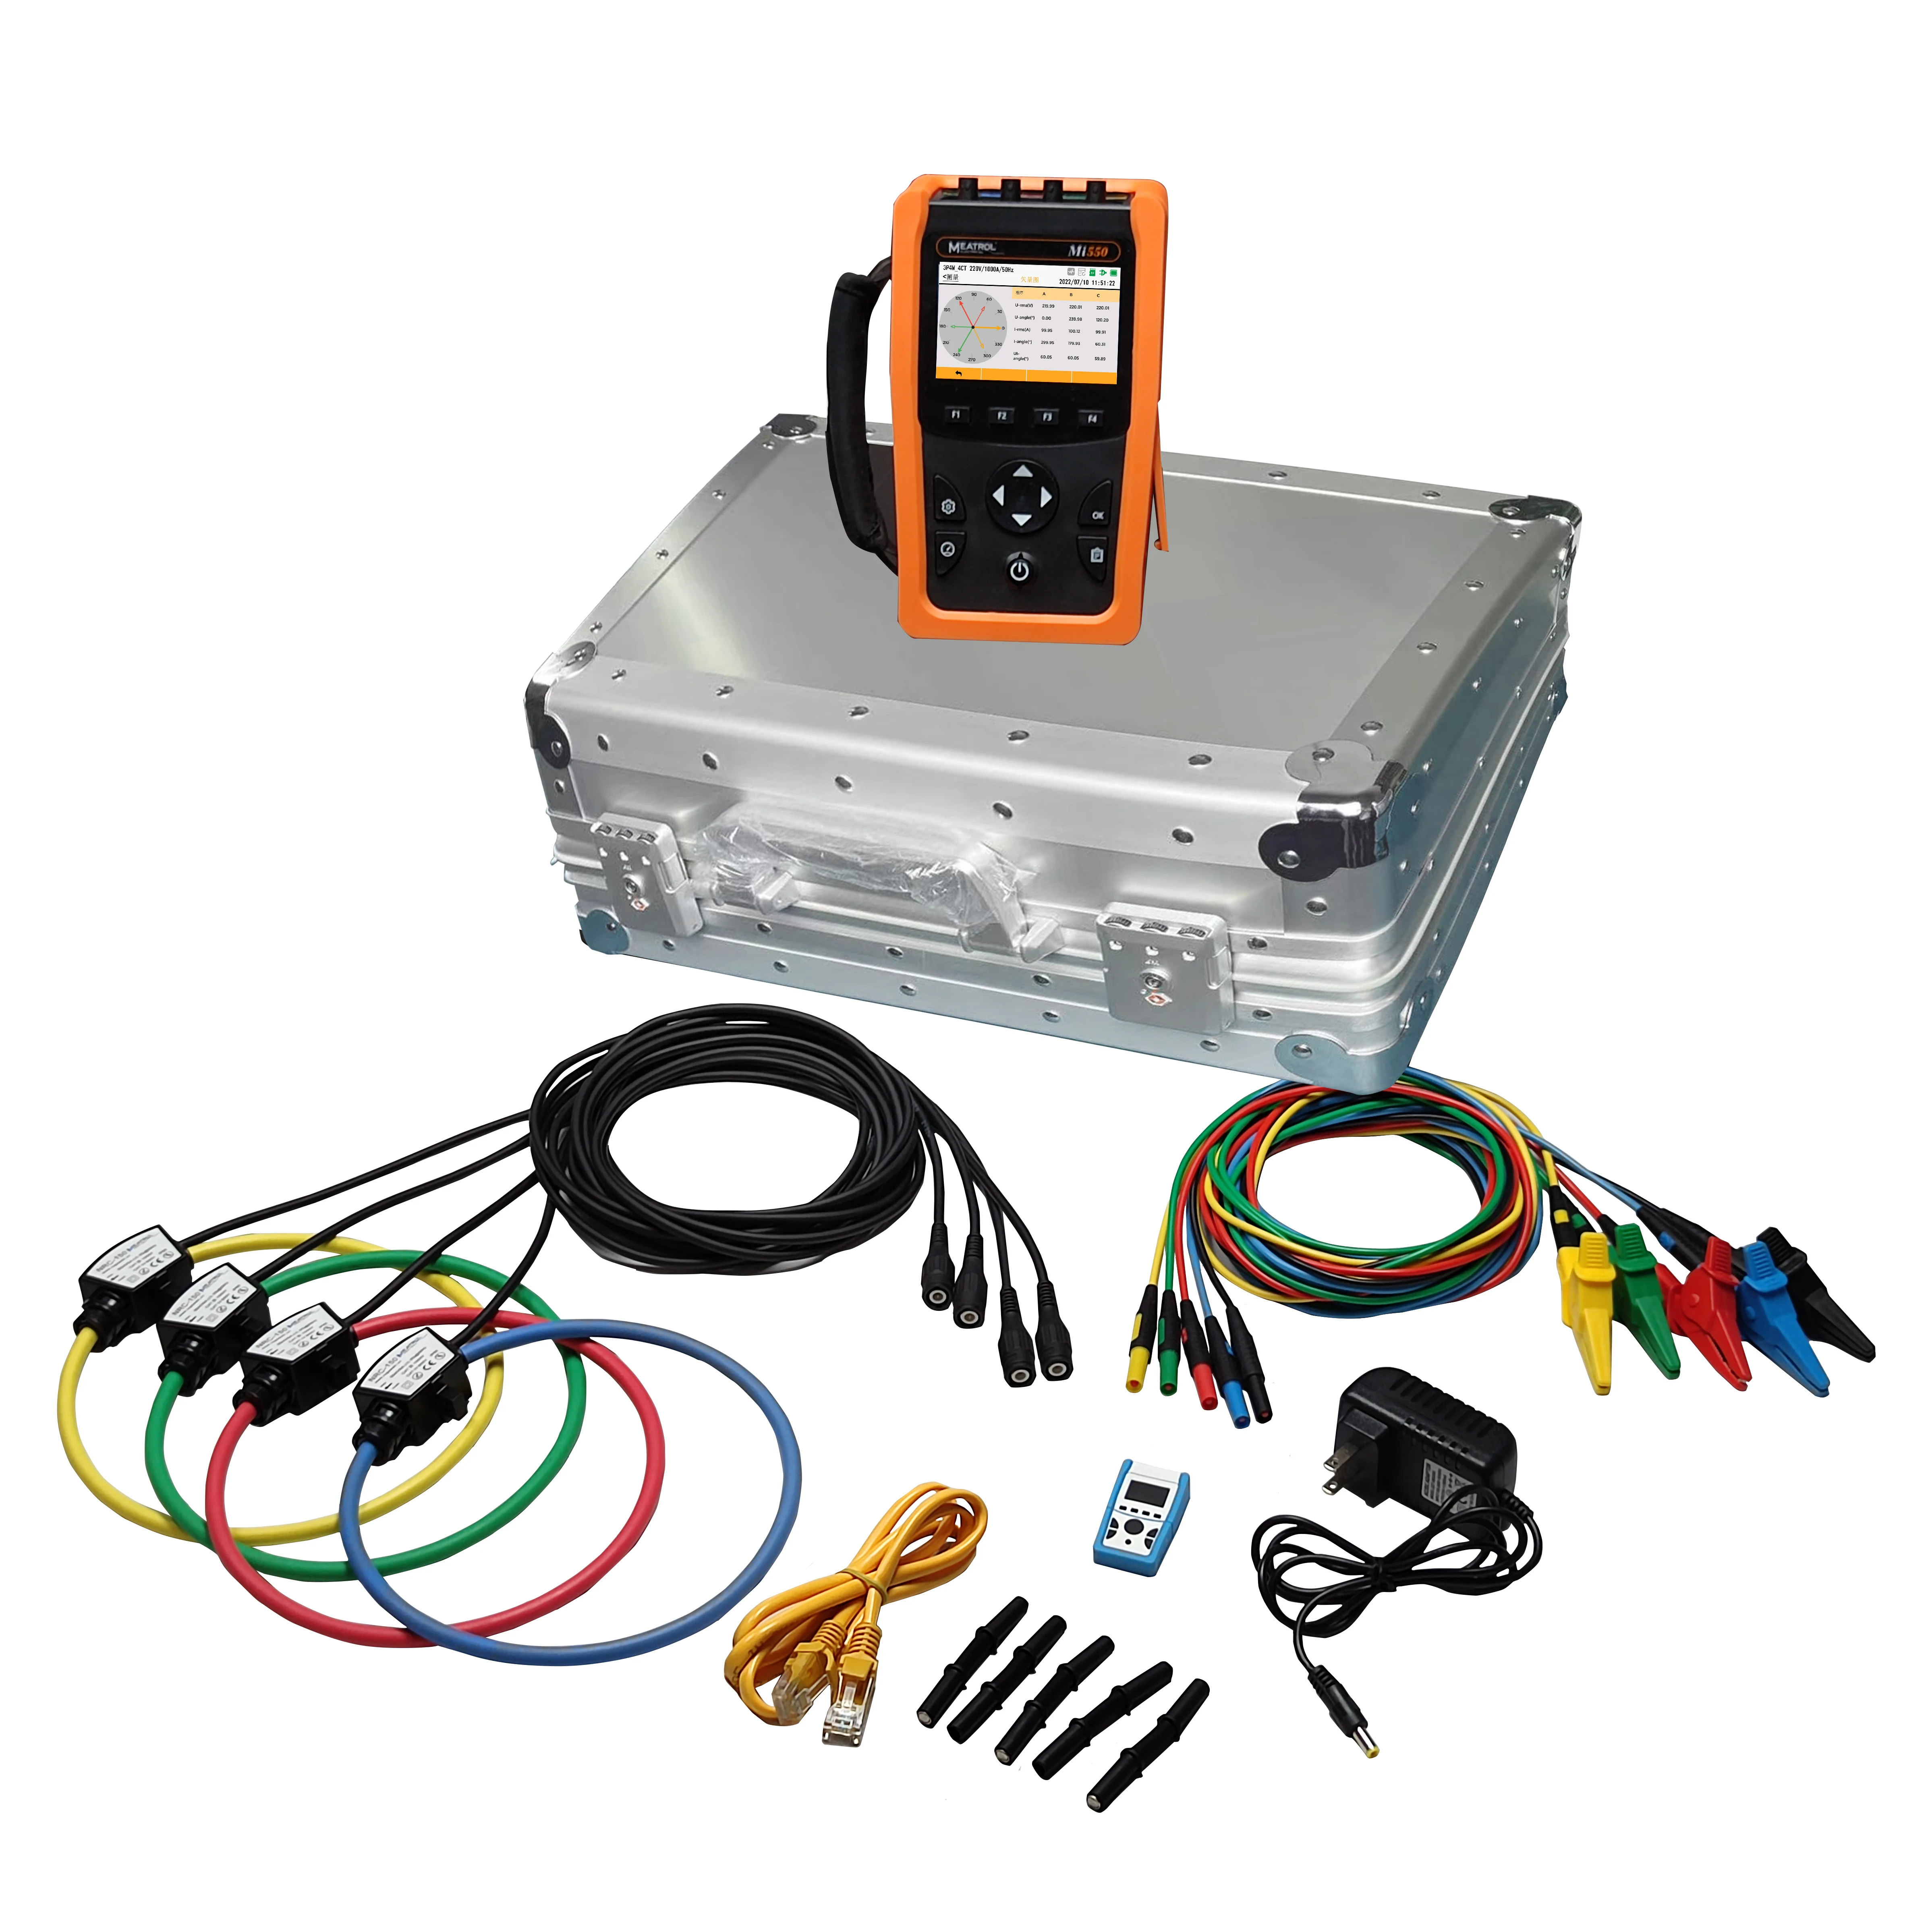 Портативный интеллектуальный счетчик электроэнергии MEATROL Mi550, анализатор качества электроэнергии, Электроизмерительные приборы 1